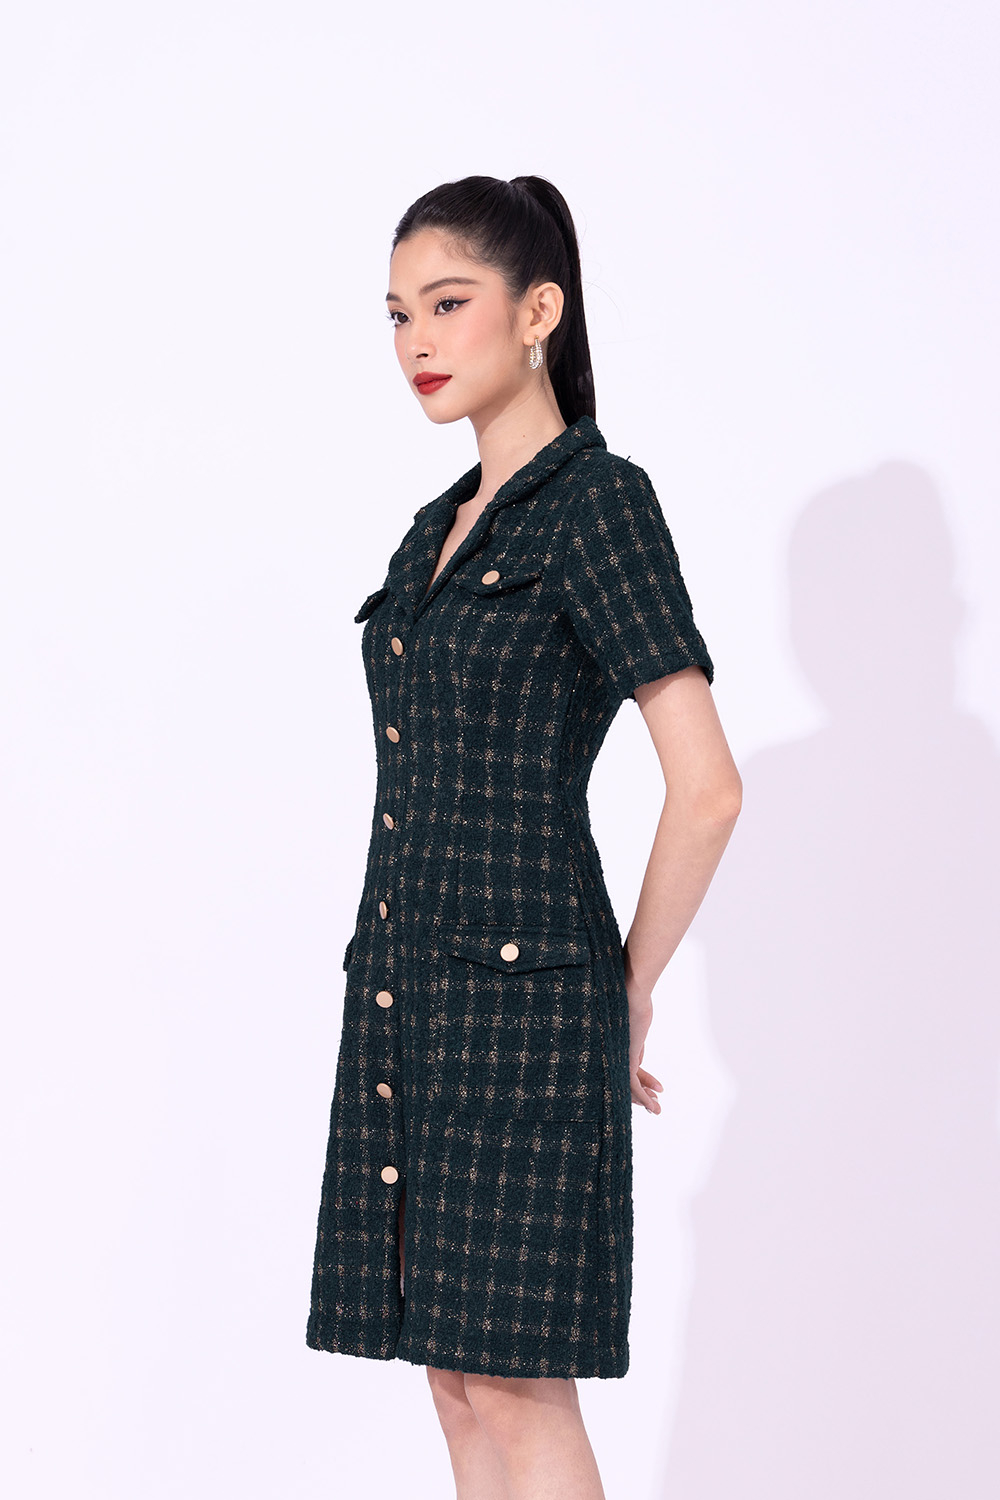 Đầm chữ A vải tweed đen trắng | Shopee Việt Nam